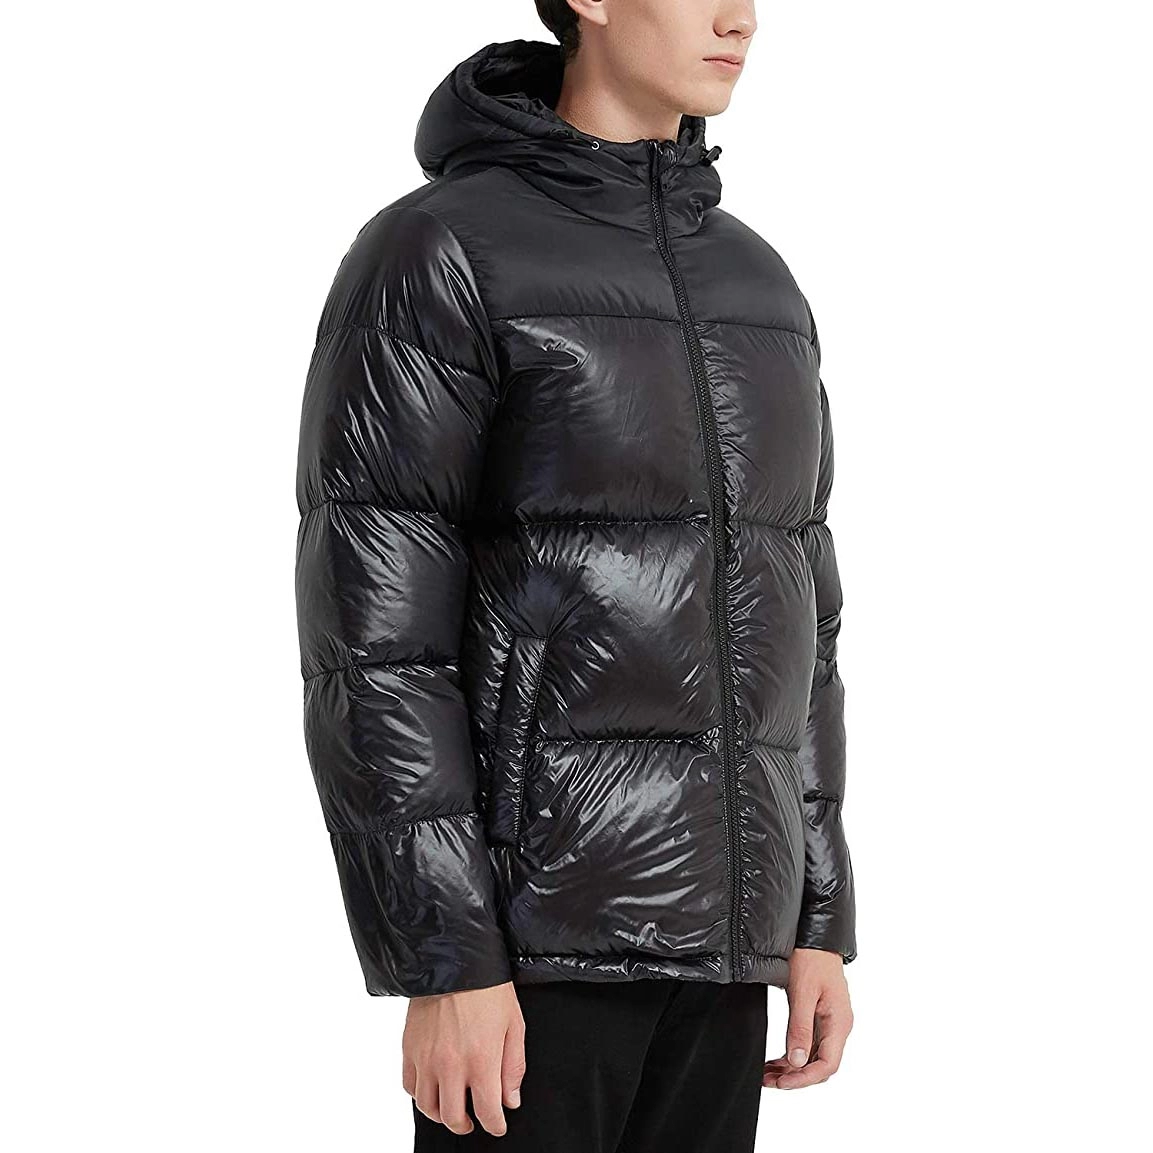 Мужская пуховая куртка с капюшоном, легкая непромокаемая зимняя упаковка, пальто